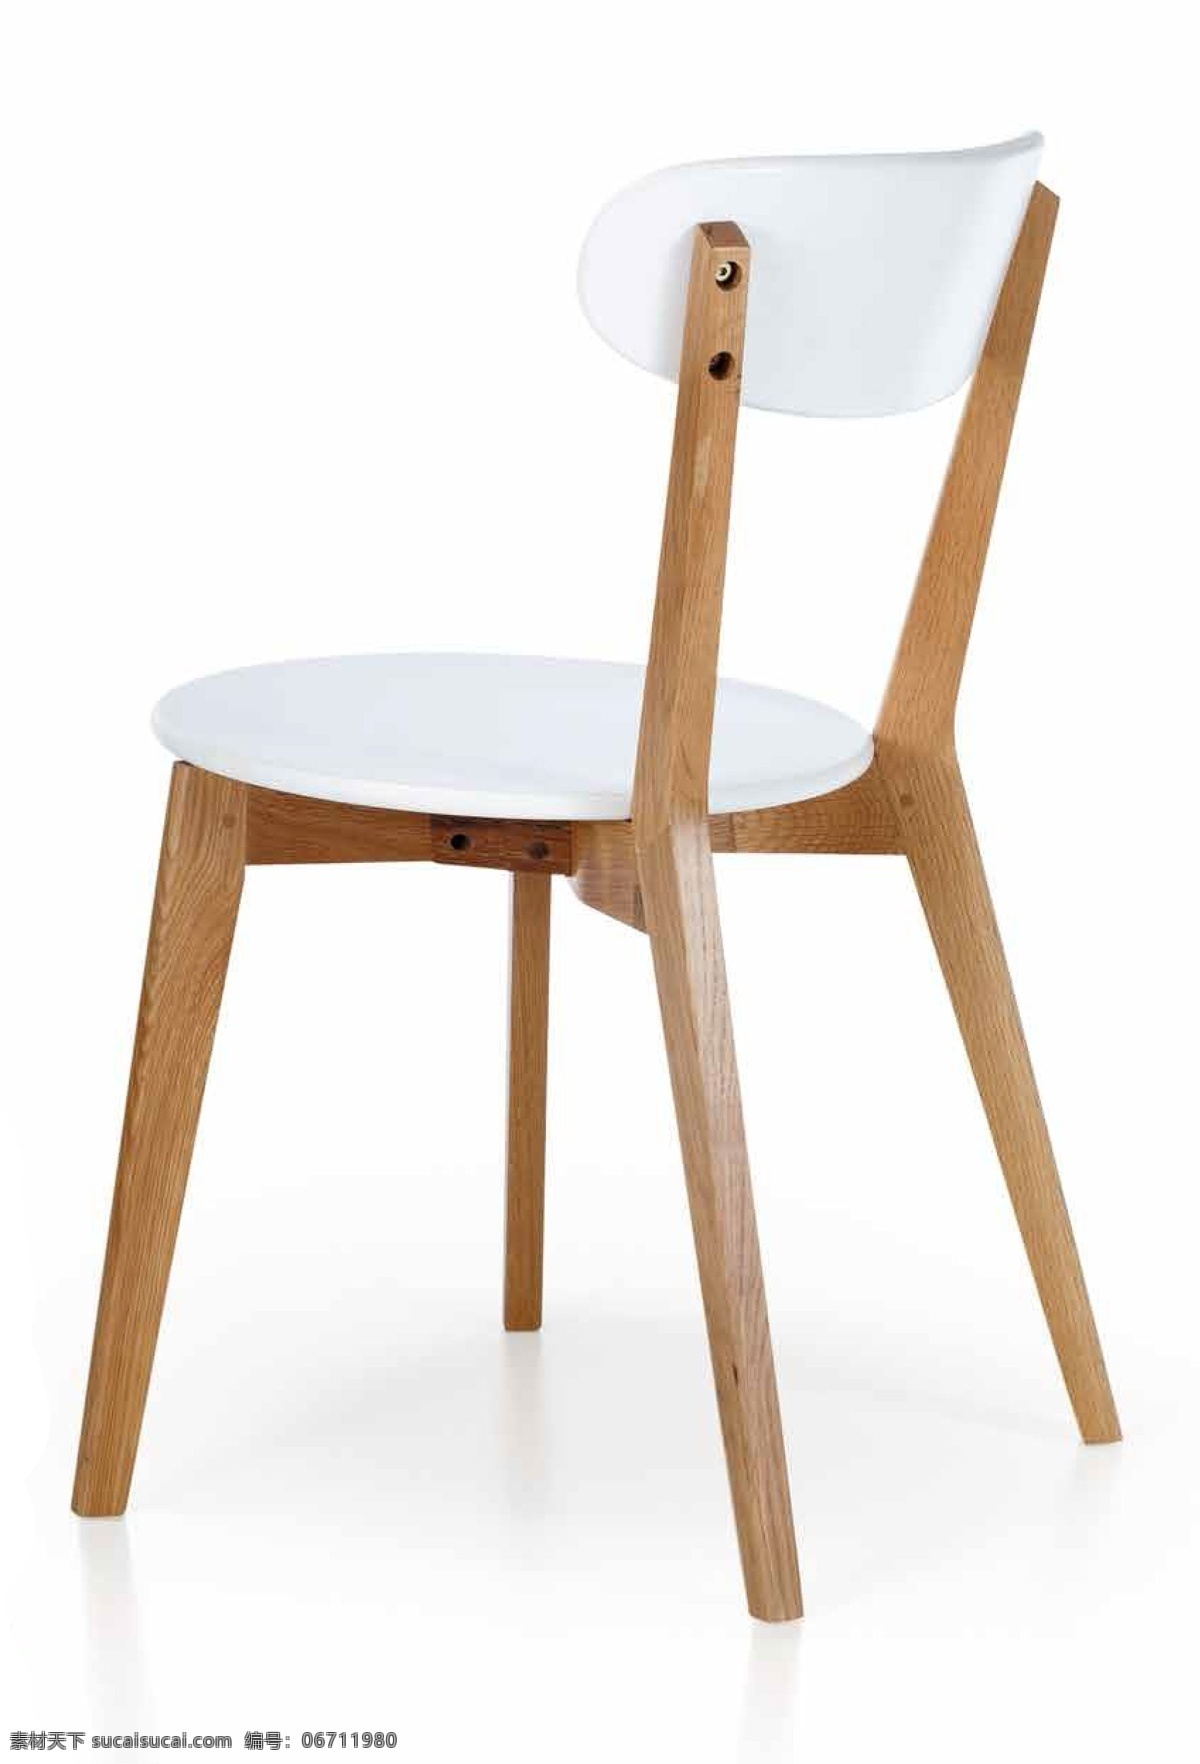 家具背景图 椅子 室内效果图 贴图 高清 白色 木椅